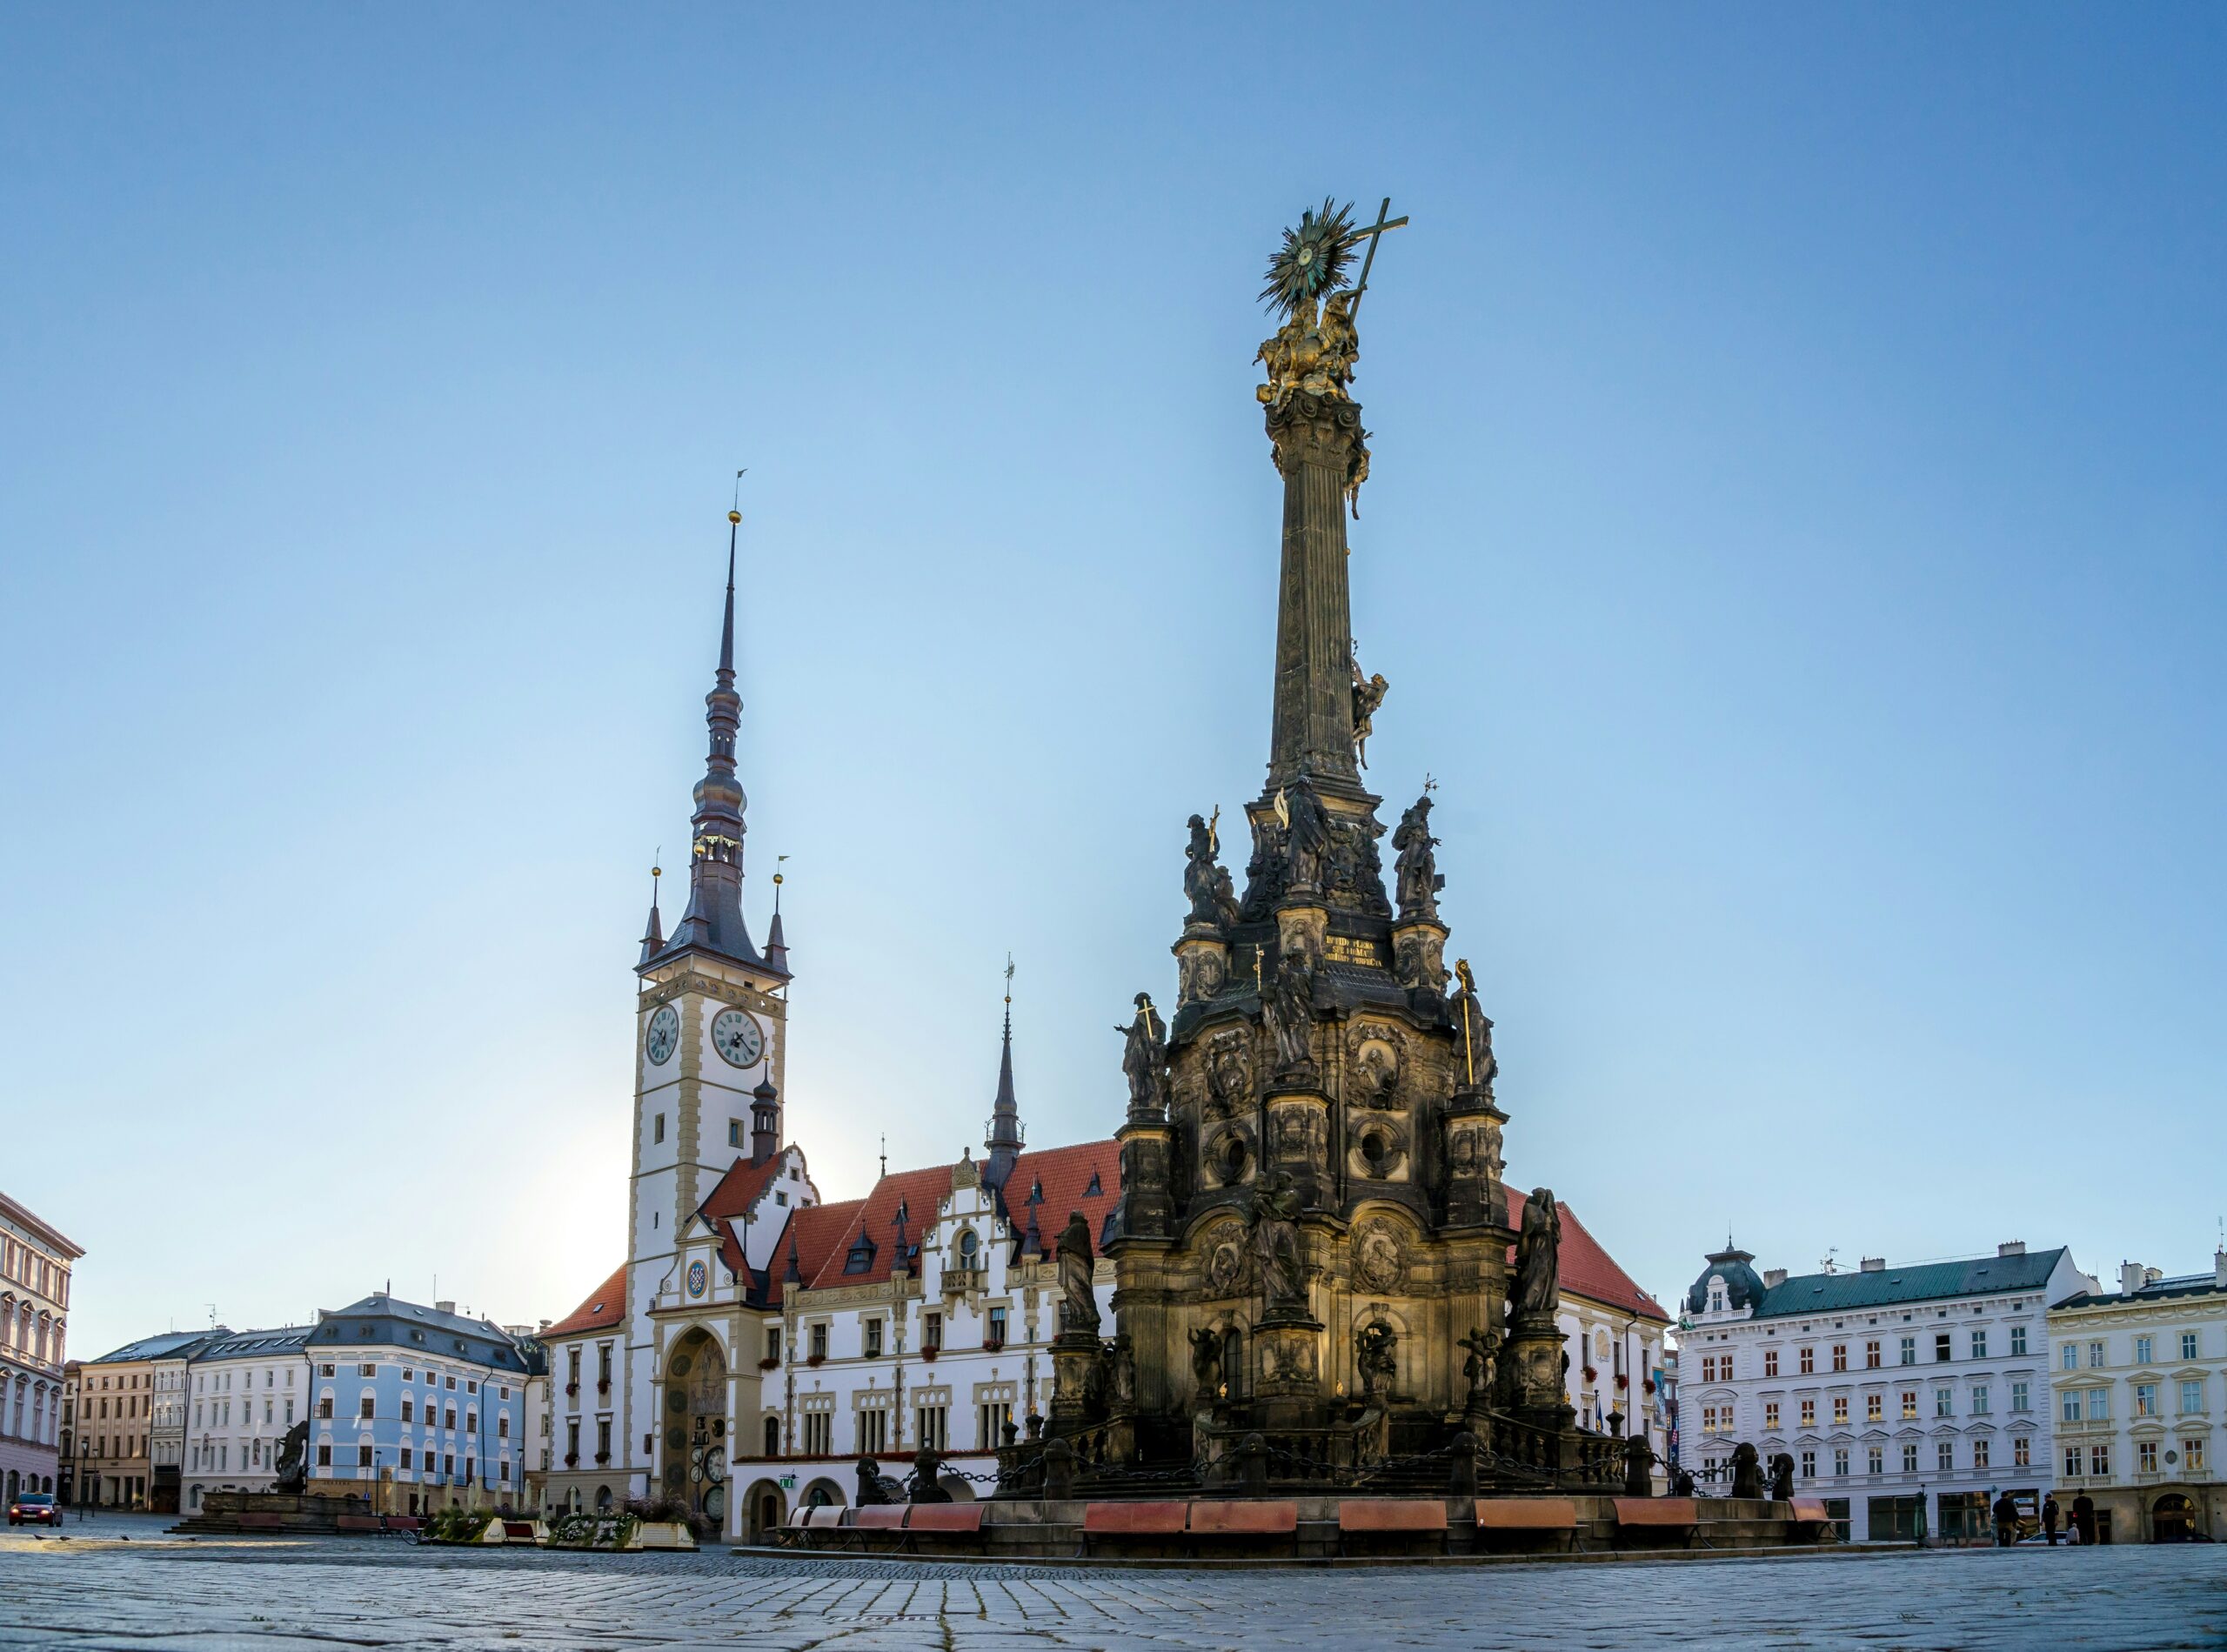 Přečtete si více ze článku Olomouc bude mít u příležitosti výročí vstupu ČR do EU svojí eurobankovku